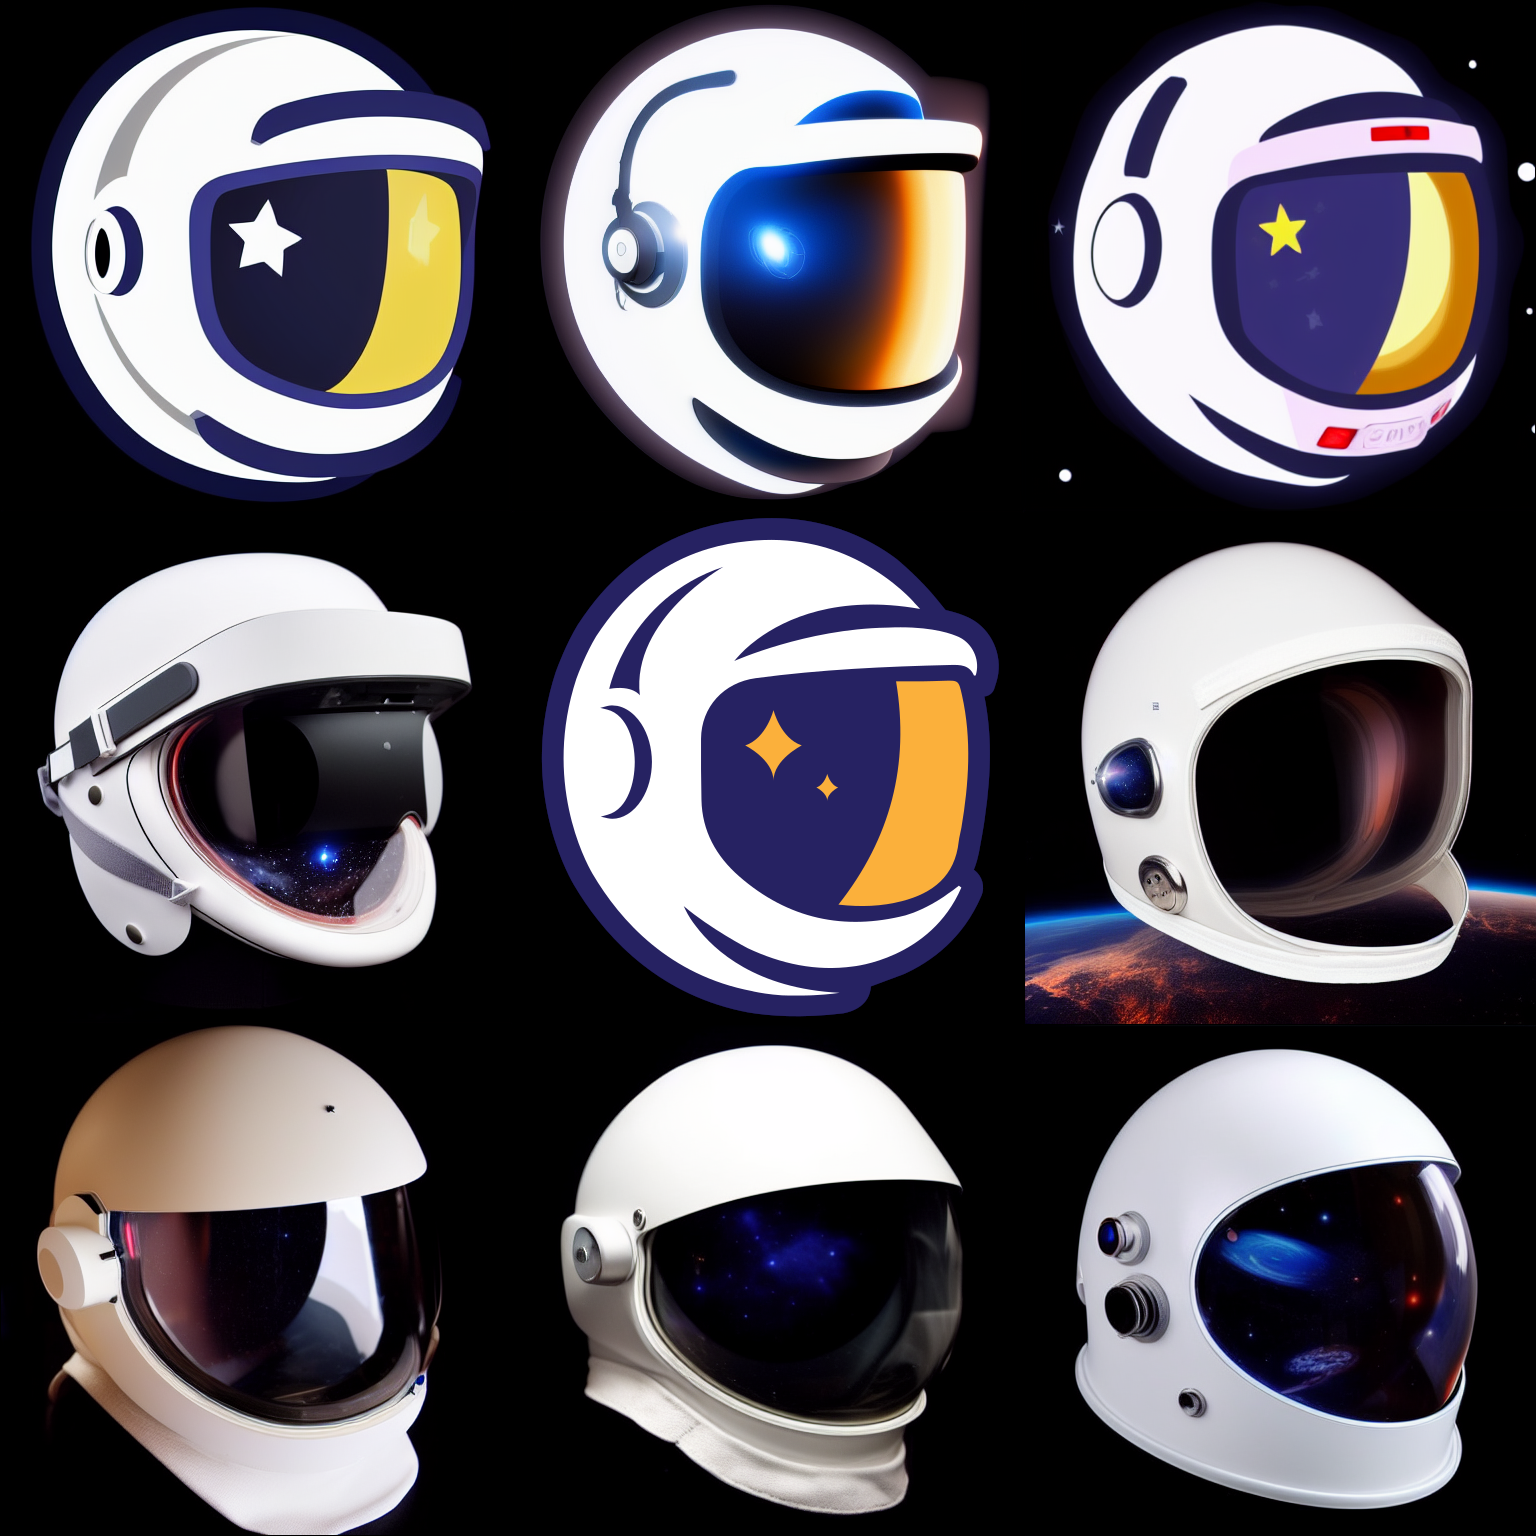 Various space suit helmets